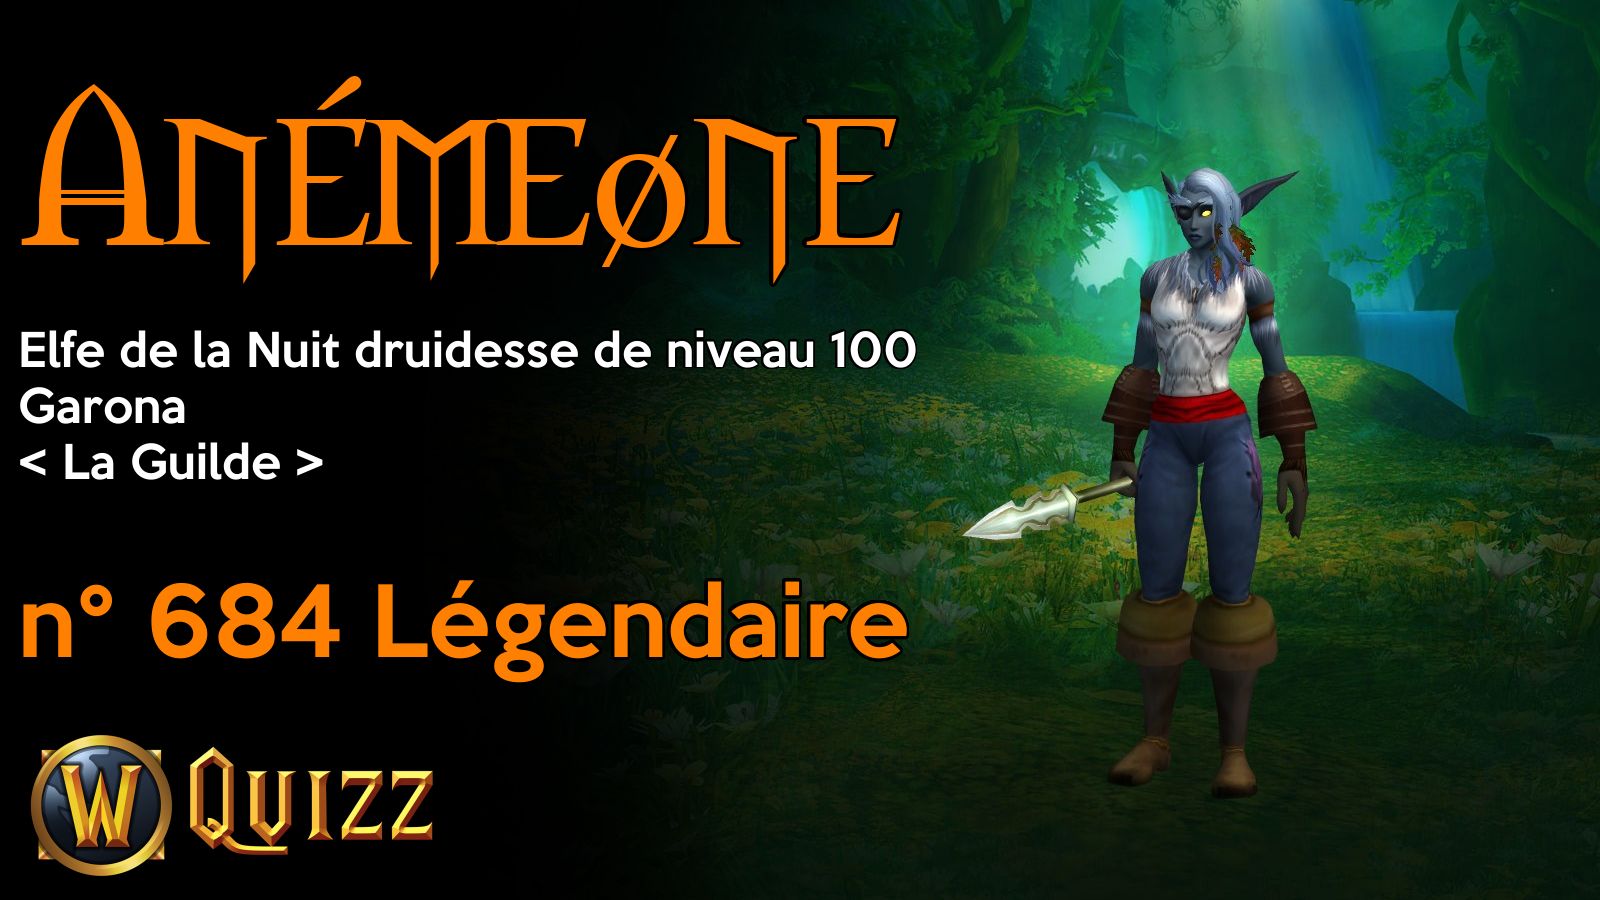 Anémeøne, Elfe de la Nuit druidesse de niveau 100, Garona